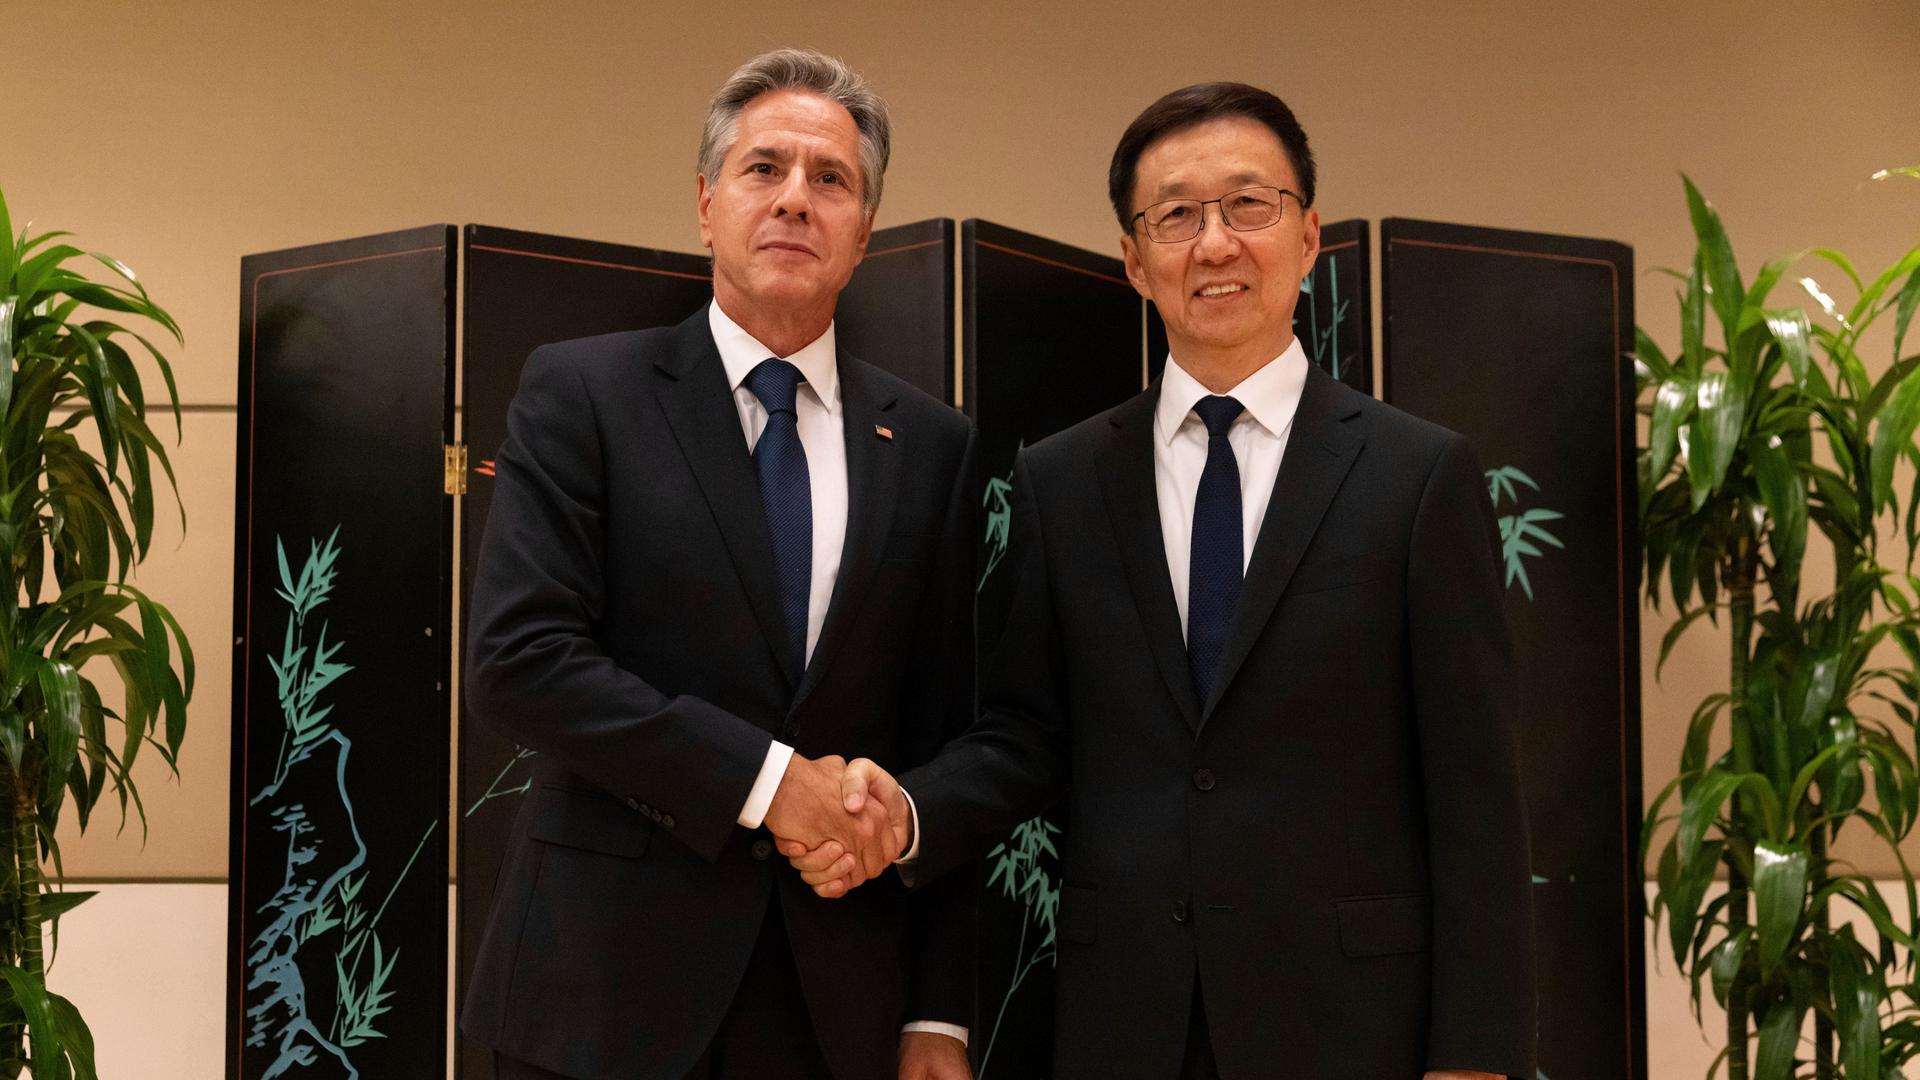 US-Außenminister Anthony Blinken und chinesische Vizepräsident Han Zheng schütteln sich die Hände und blicken in die Kamera.